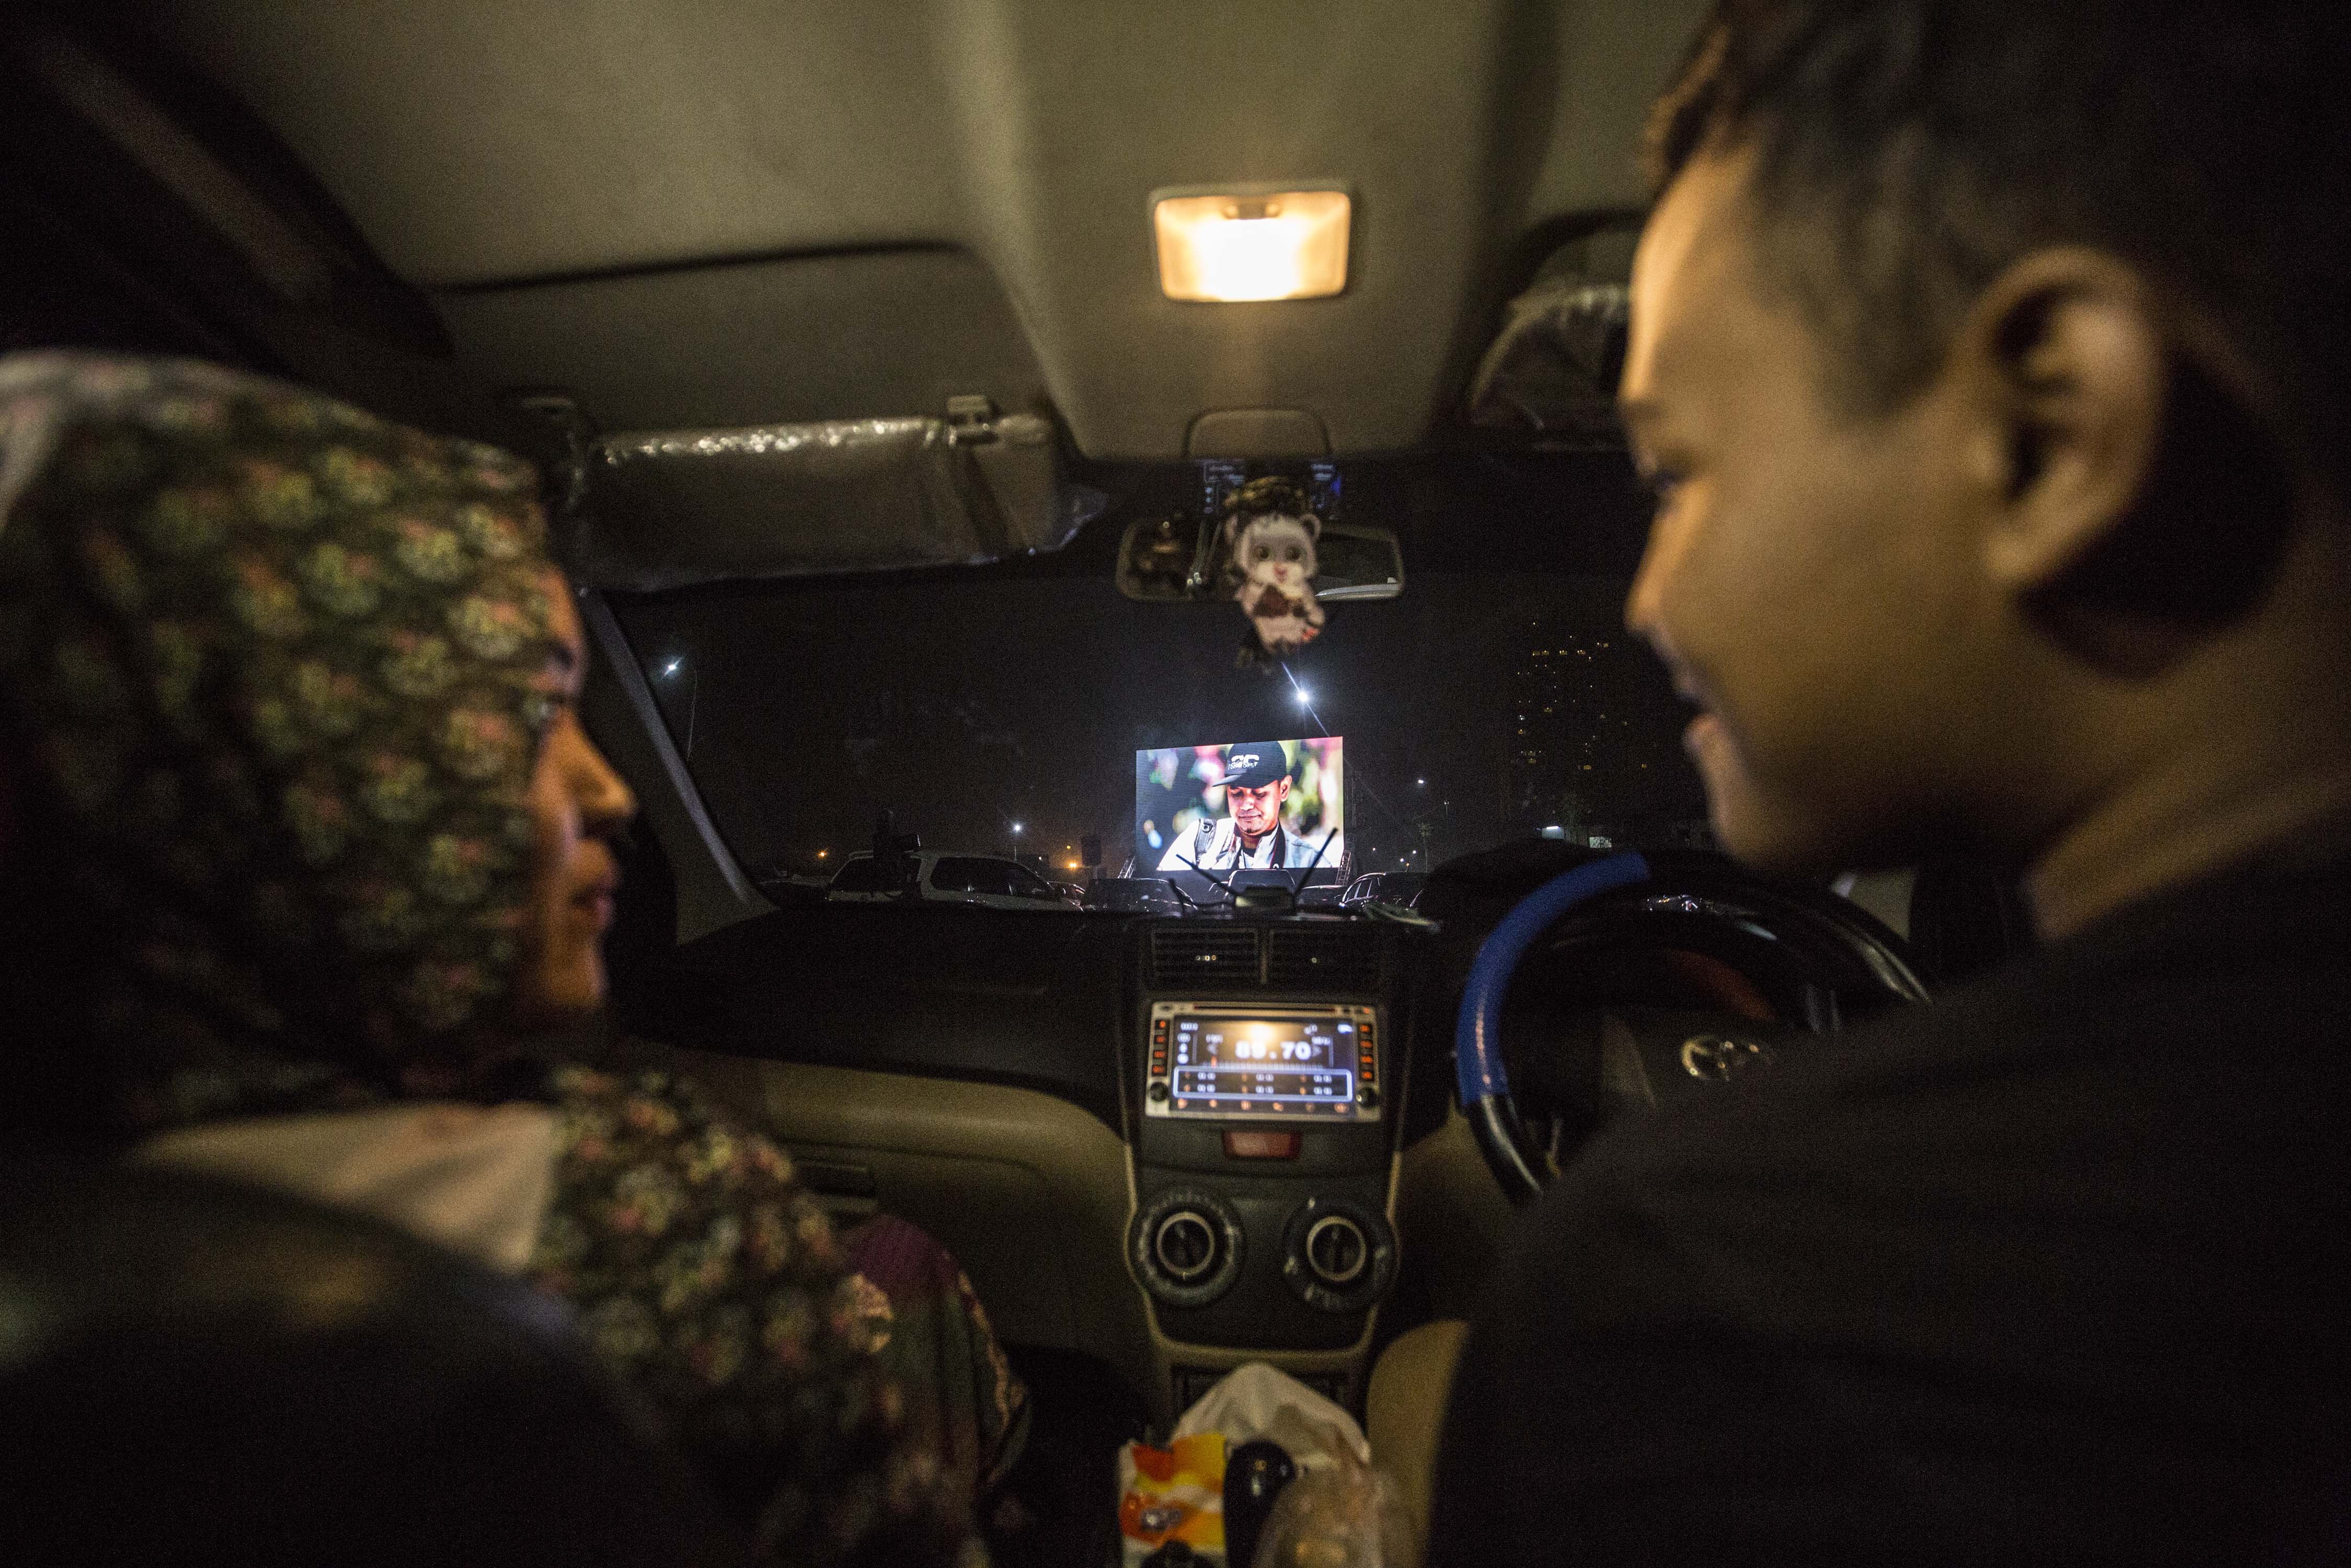 Pengunjung menonton film dari dalam mobil di lahan parkir District 1 Meikarta Cikarang, Kabupaten Bekasi, Jawa Barat, Sabtu (6/6/2020). Fasilitas layar lebar disiapkan di lahan parkir untuk pengunjung yang hendak membeli makanan di kawasan District 1 Meikarta secara drive thru dengan menerapkan protokol kesehatan pencegahan Covid-19.